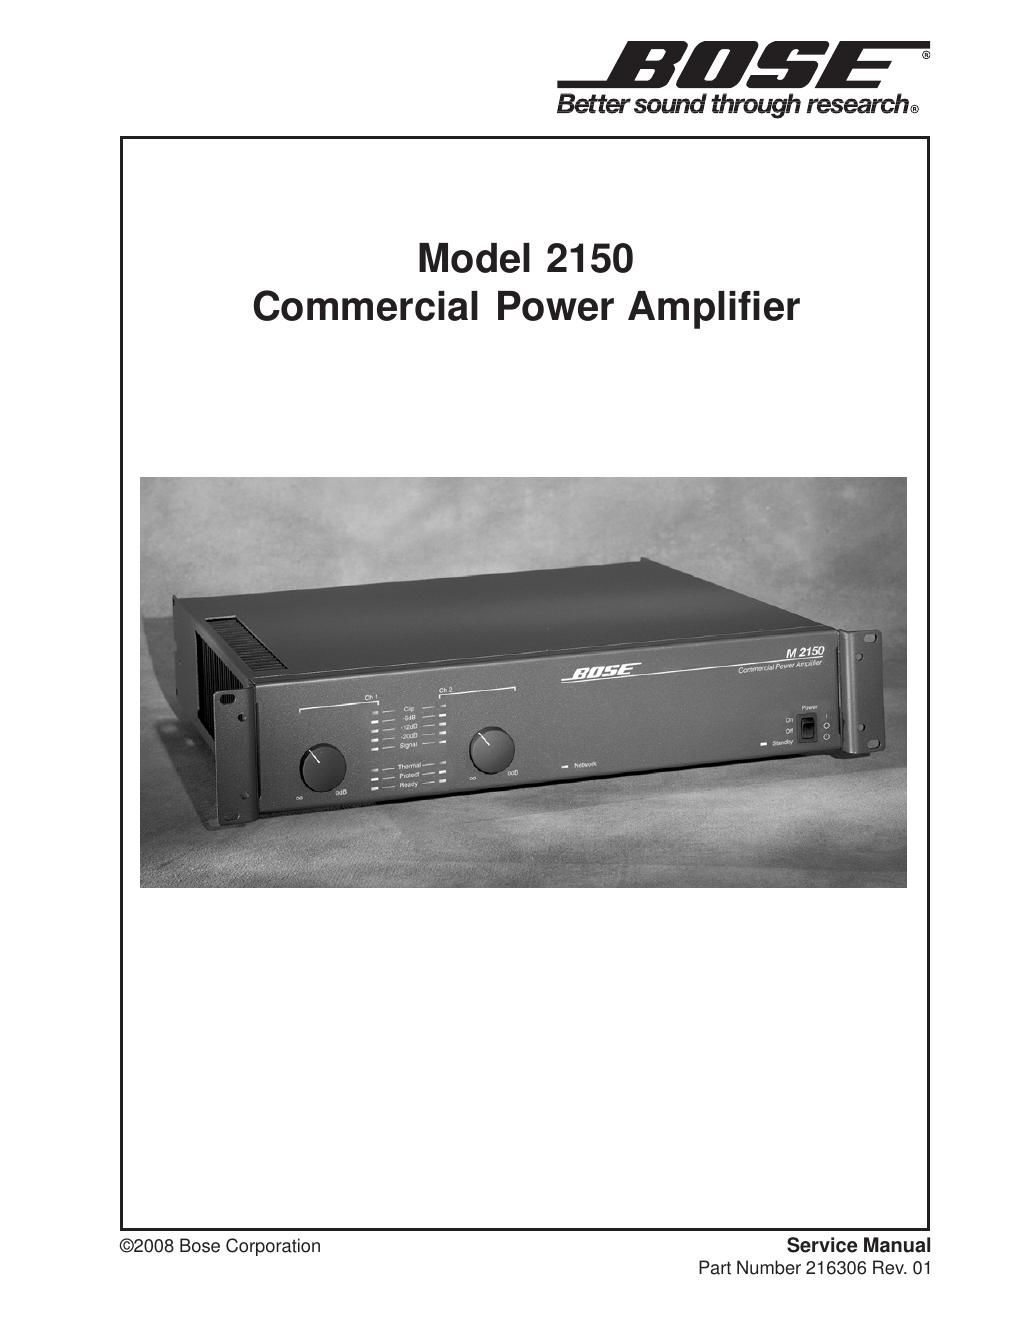 Trafik Virus Ødelægge Free Audio Service Manuals - Free download bose model 2150 amplifier service  manual rev 01